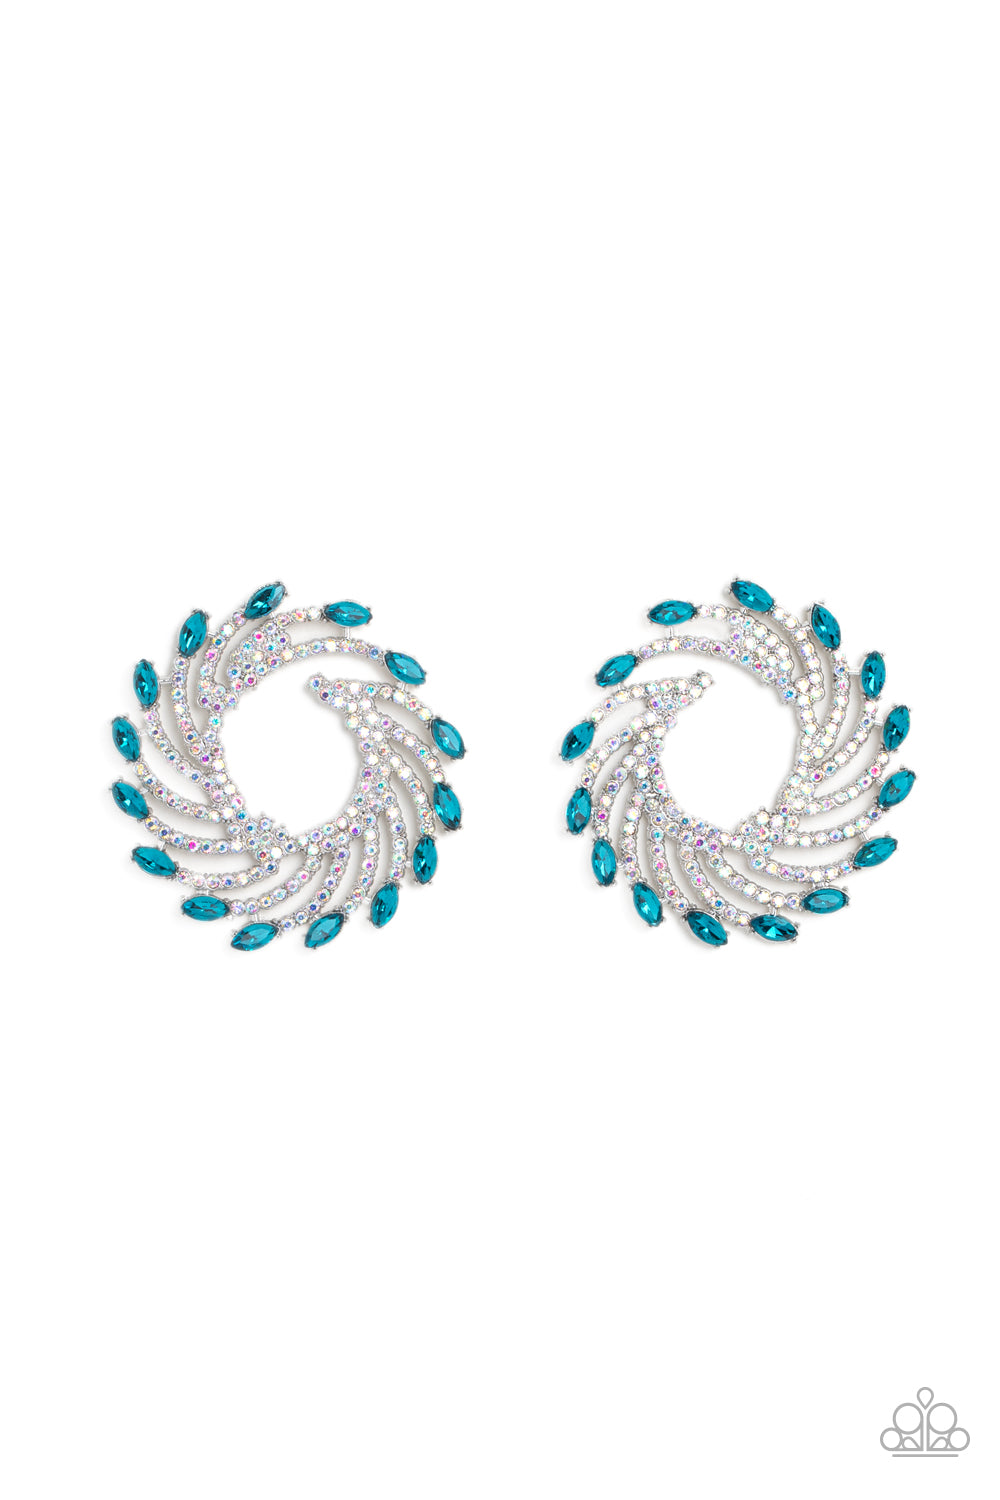 oak-sisters-jewelry-firework-fanfare-blue-post earrings-paparazzi-accessories-by-lisa